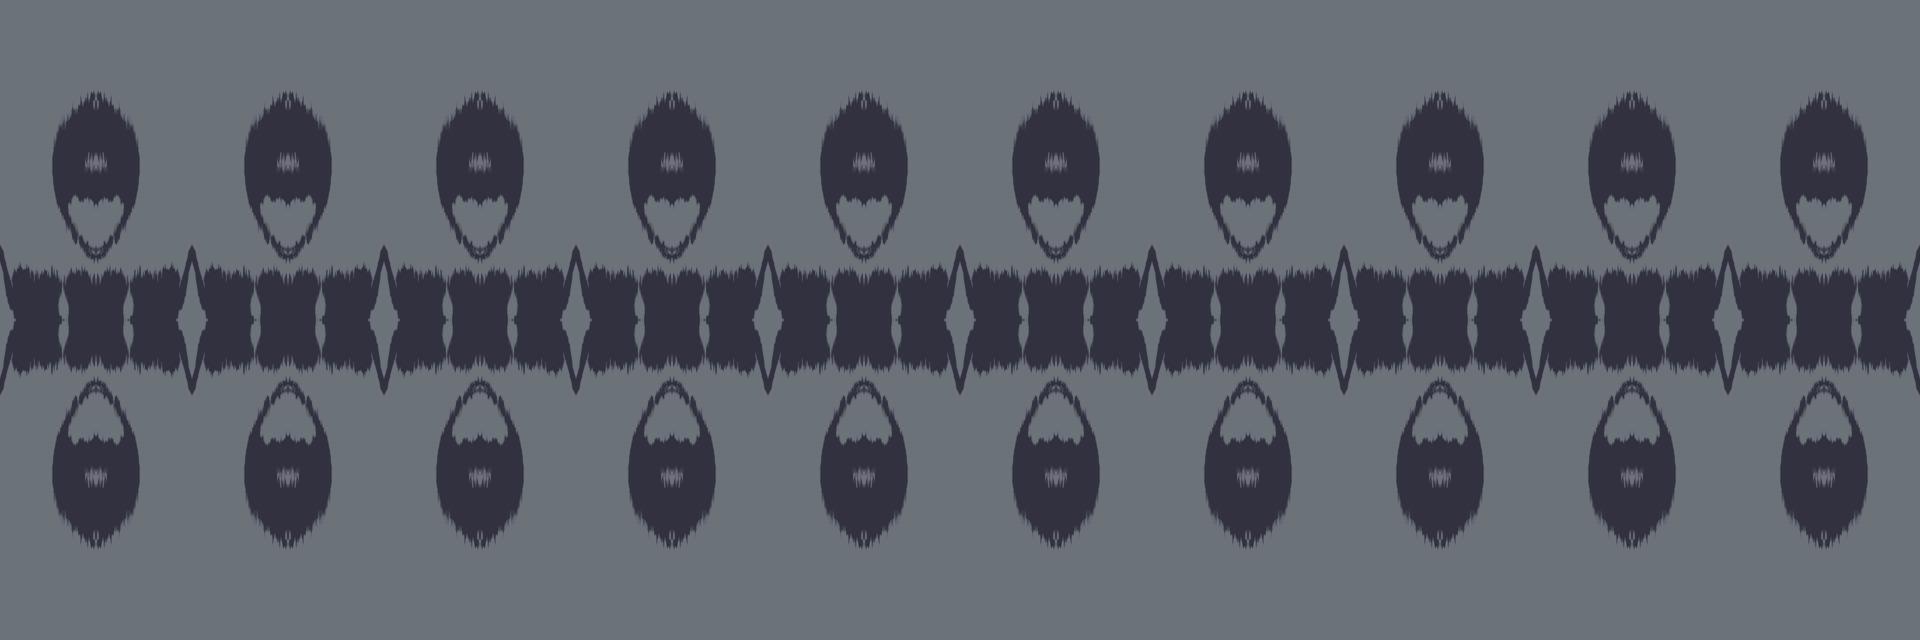 batik textil ikat diseños de patrones sin fisuras diseño vectorial digital para imprimir saree kurti borneo borde de tela símbolos de pincel muestras ropa de fiesta vector